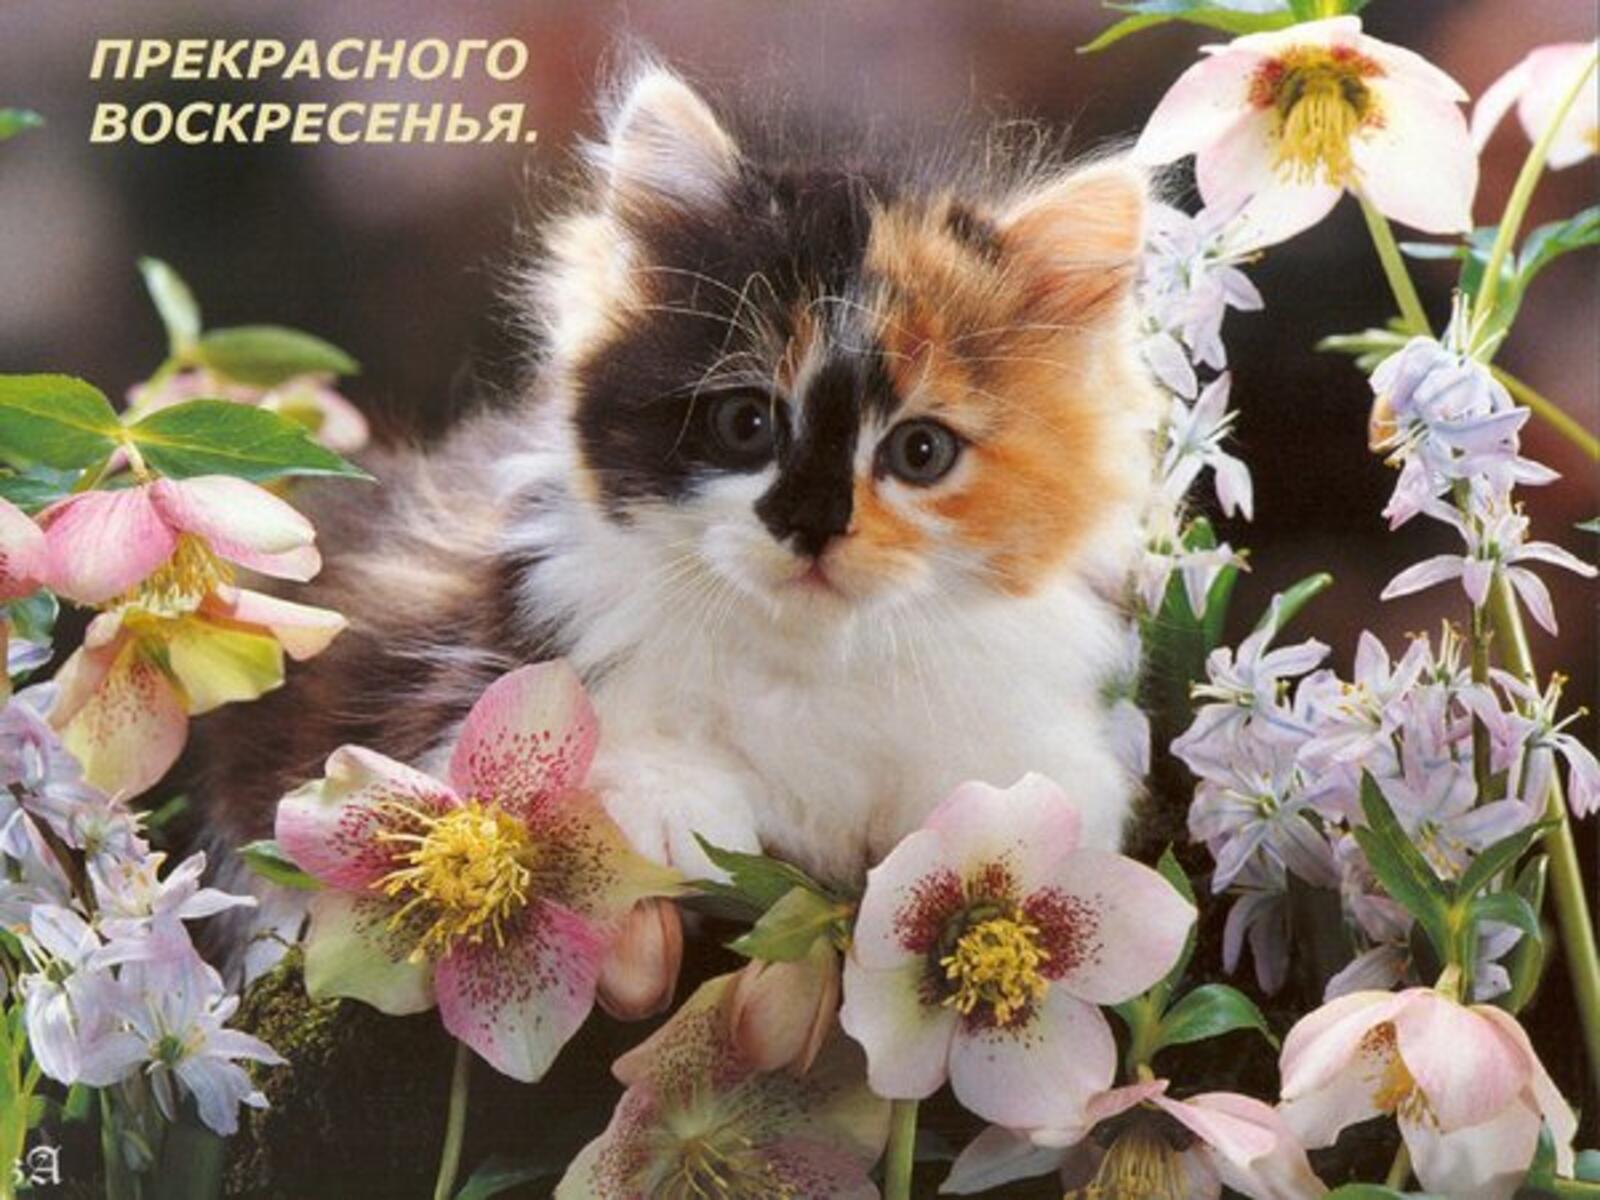 一张以星期日 美好的春日 鲜花为主题的明信片